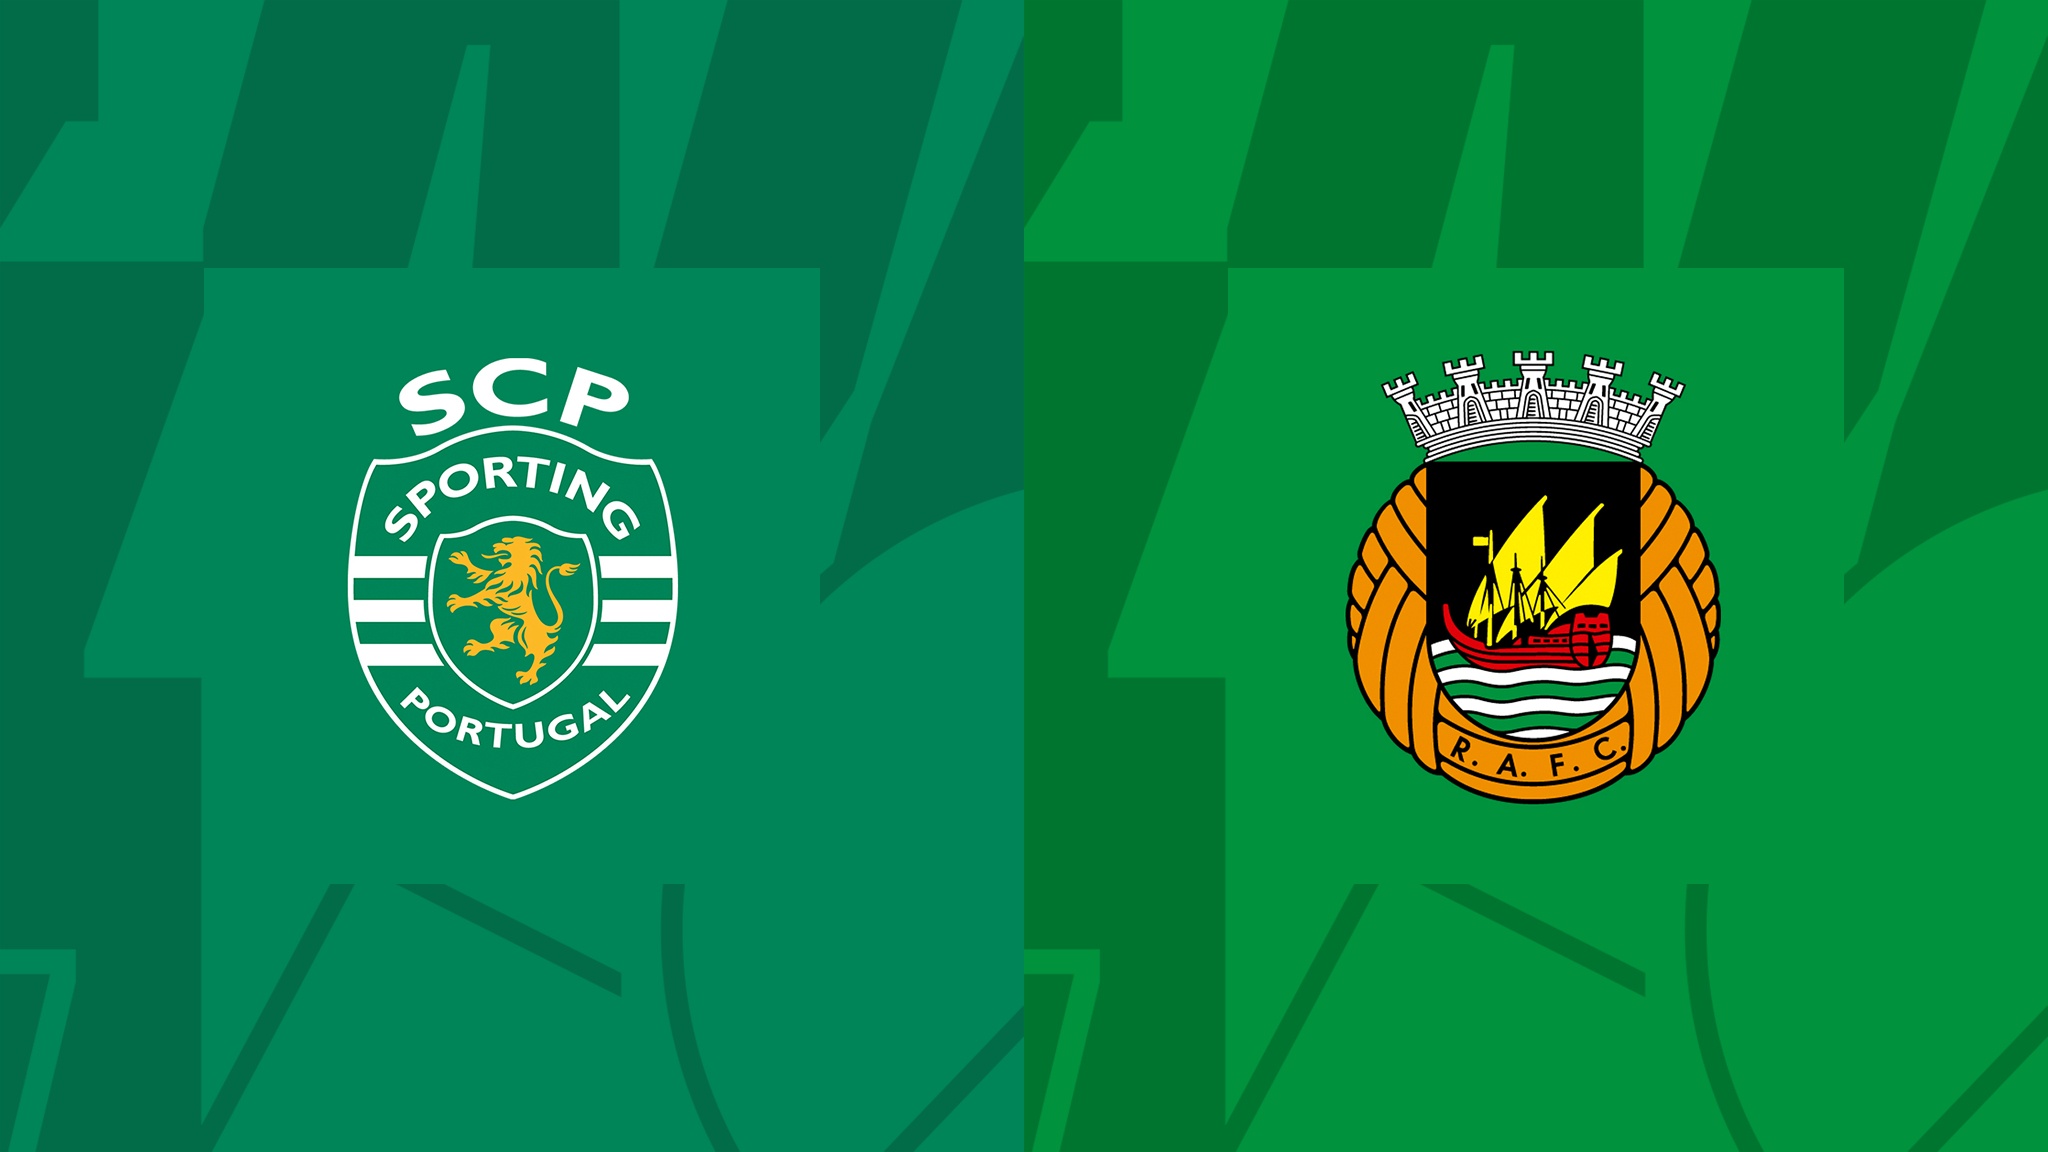  مشاهدة مباراة سبورتينج لشبونة و ريو آفي بث مباشر 13/08/2022 Sporting CP vs Rio Ave